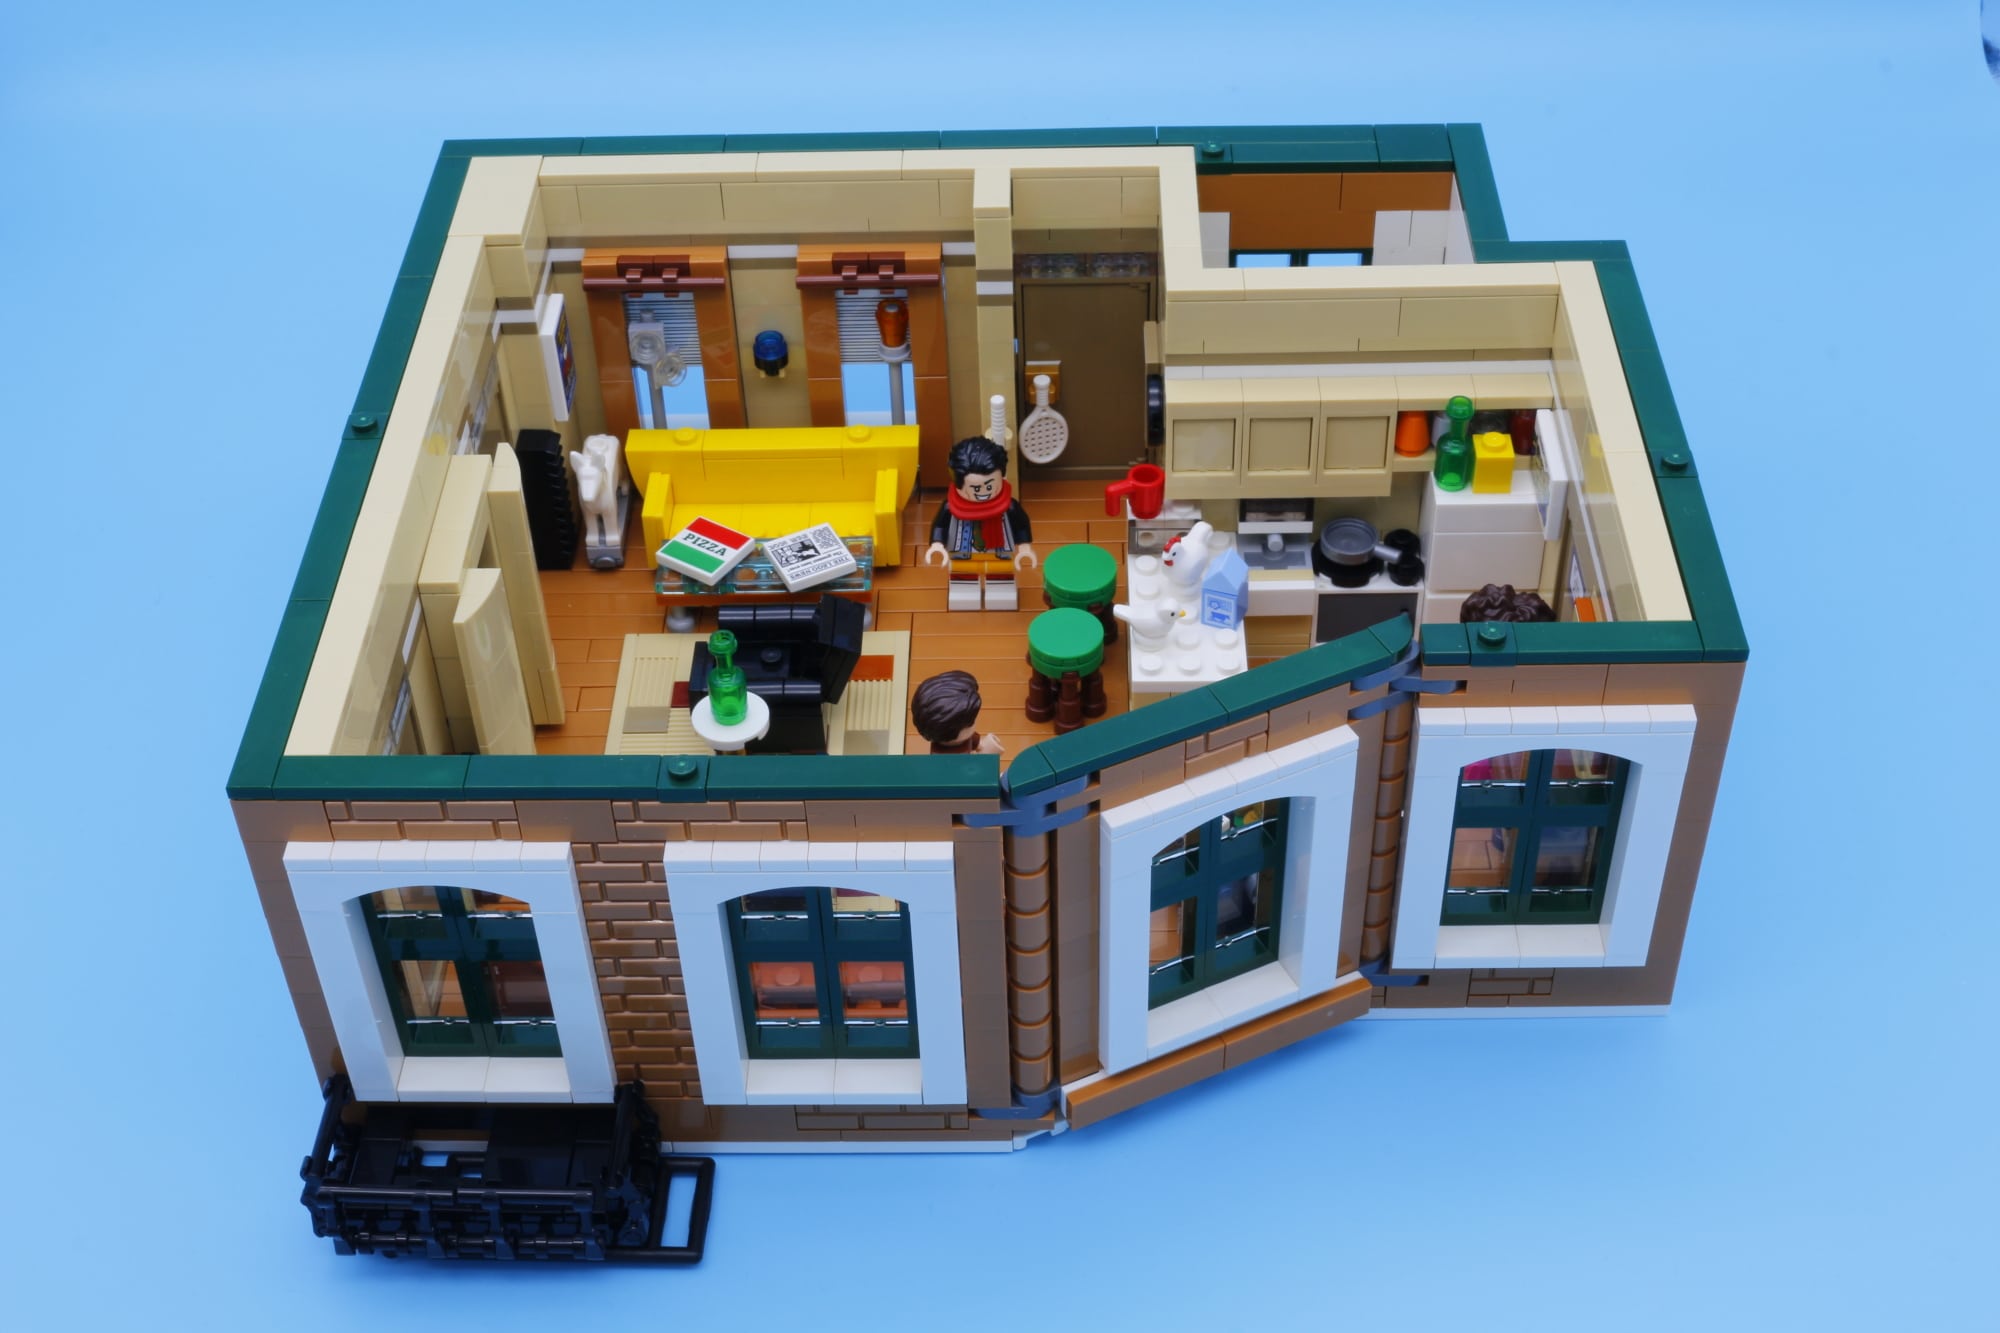 LEGO Central Perk Modular Moc 12